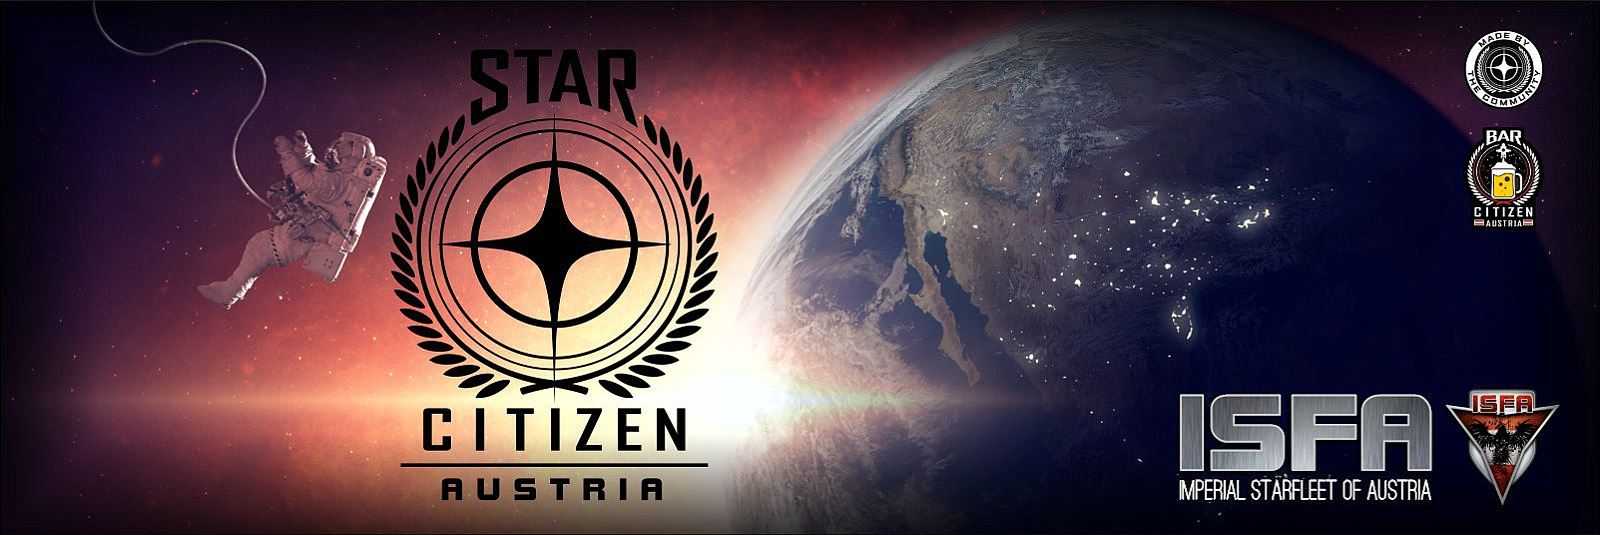  Die größte Österreichische Star Citizen Community!